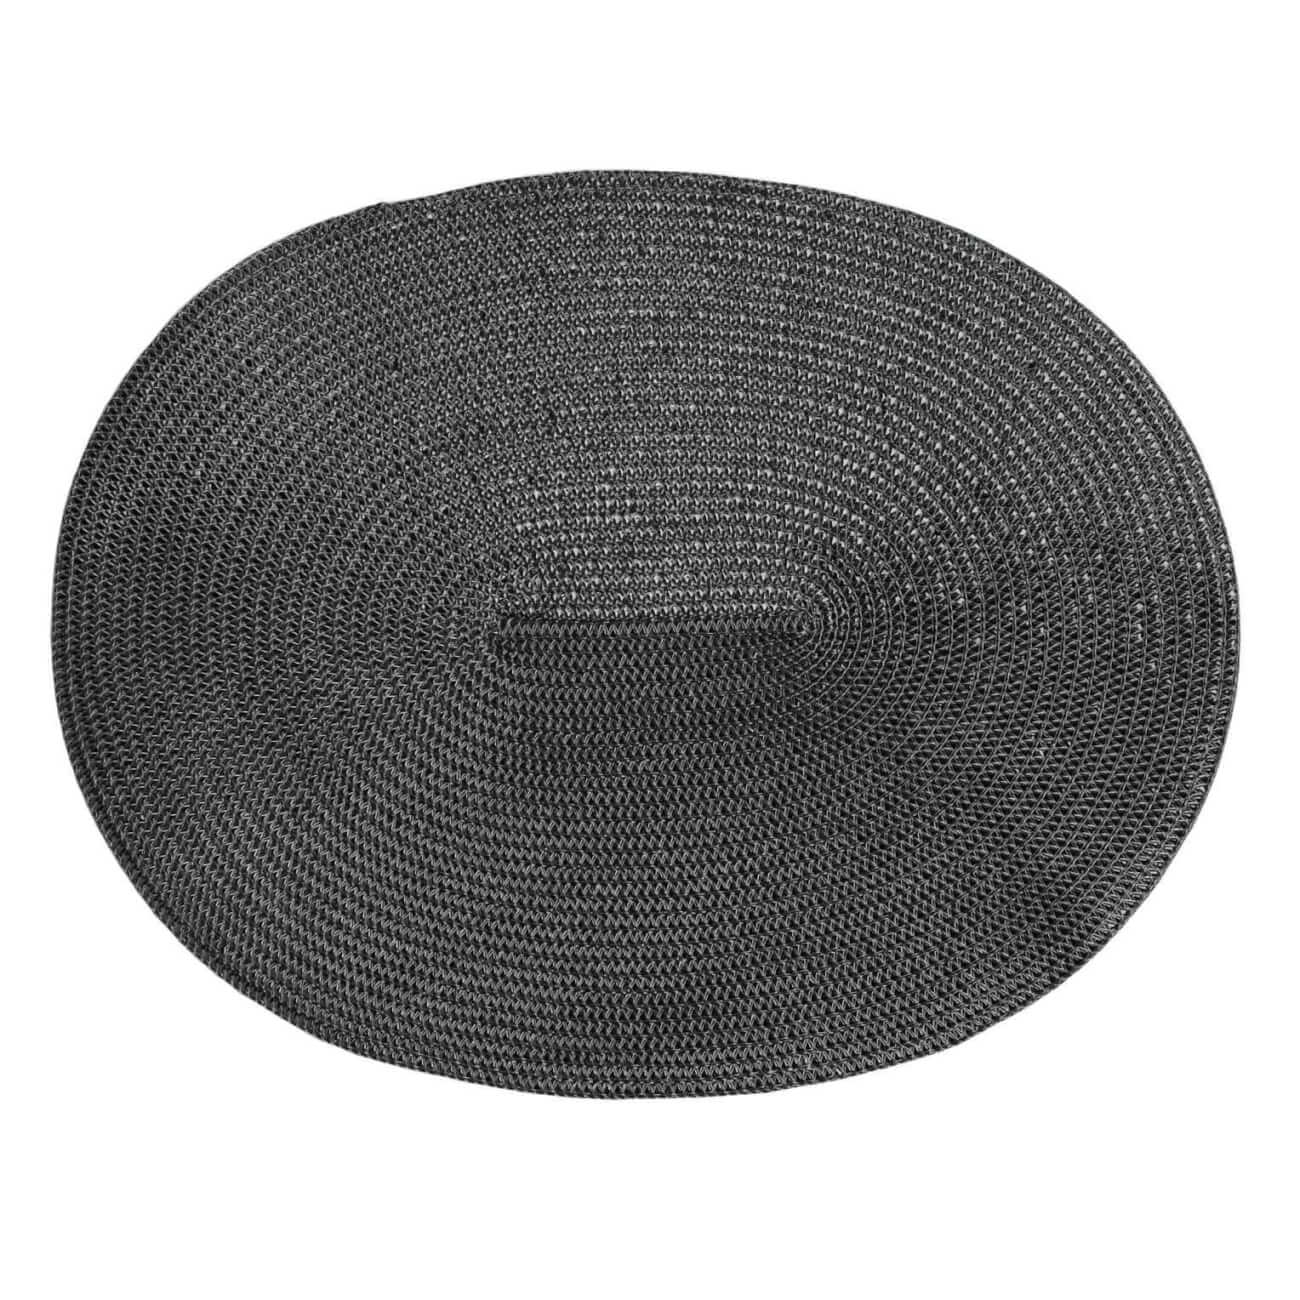 салфетка подстановочная овальная двухсторонняя fabric мятная Салфетка под приборы, 30х45 см, полиэстер, овальная, черная, Circle shine